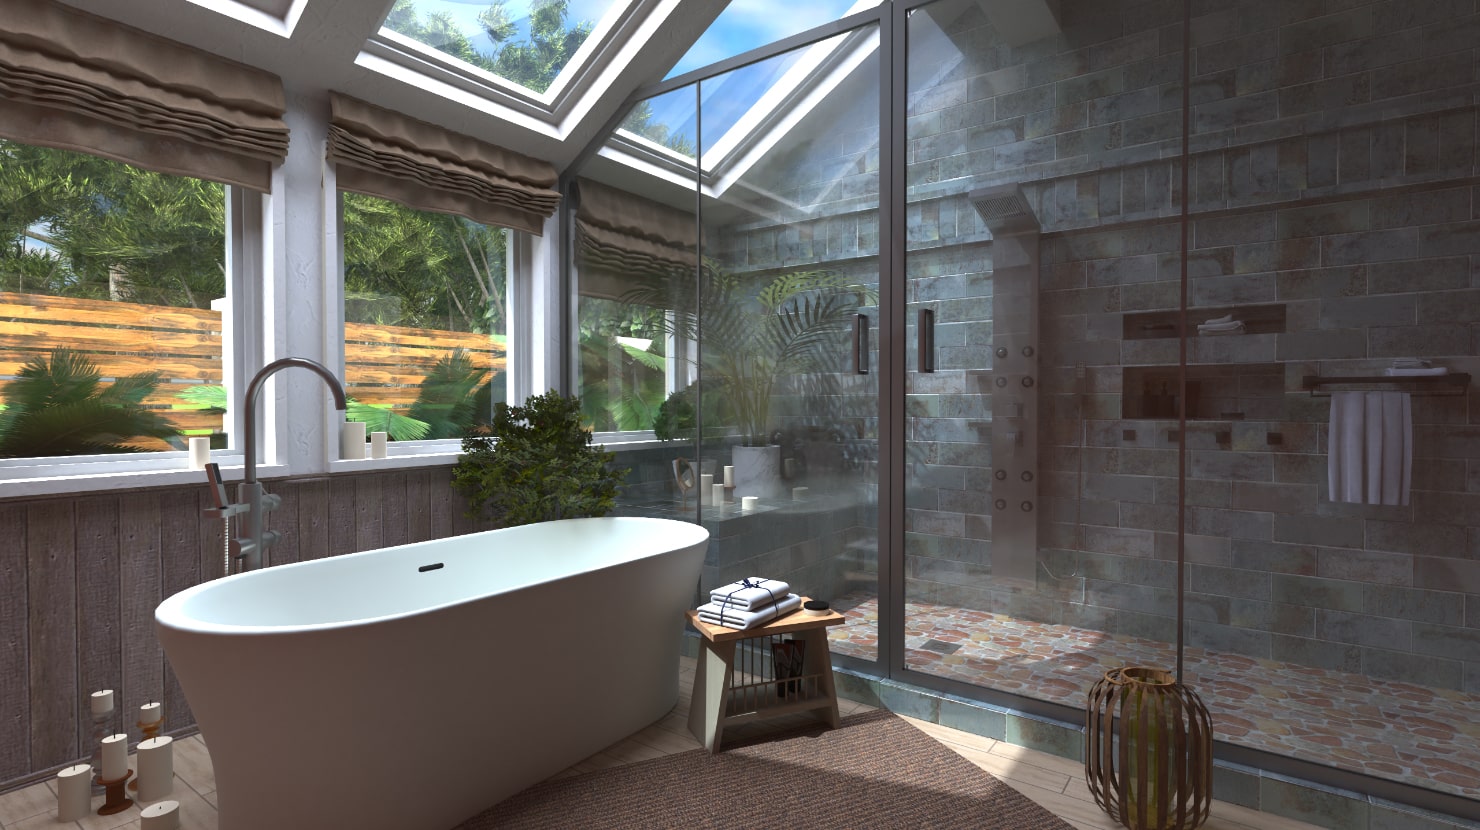 Master bathroom ideas: 19 stunning design ideas for a dreamy master bathroom  |